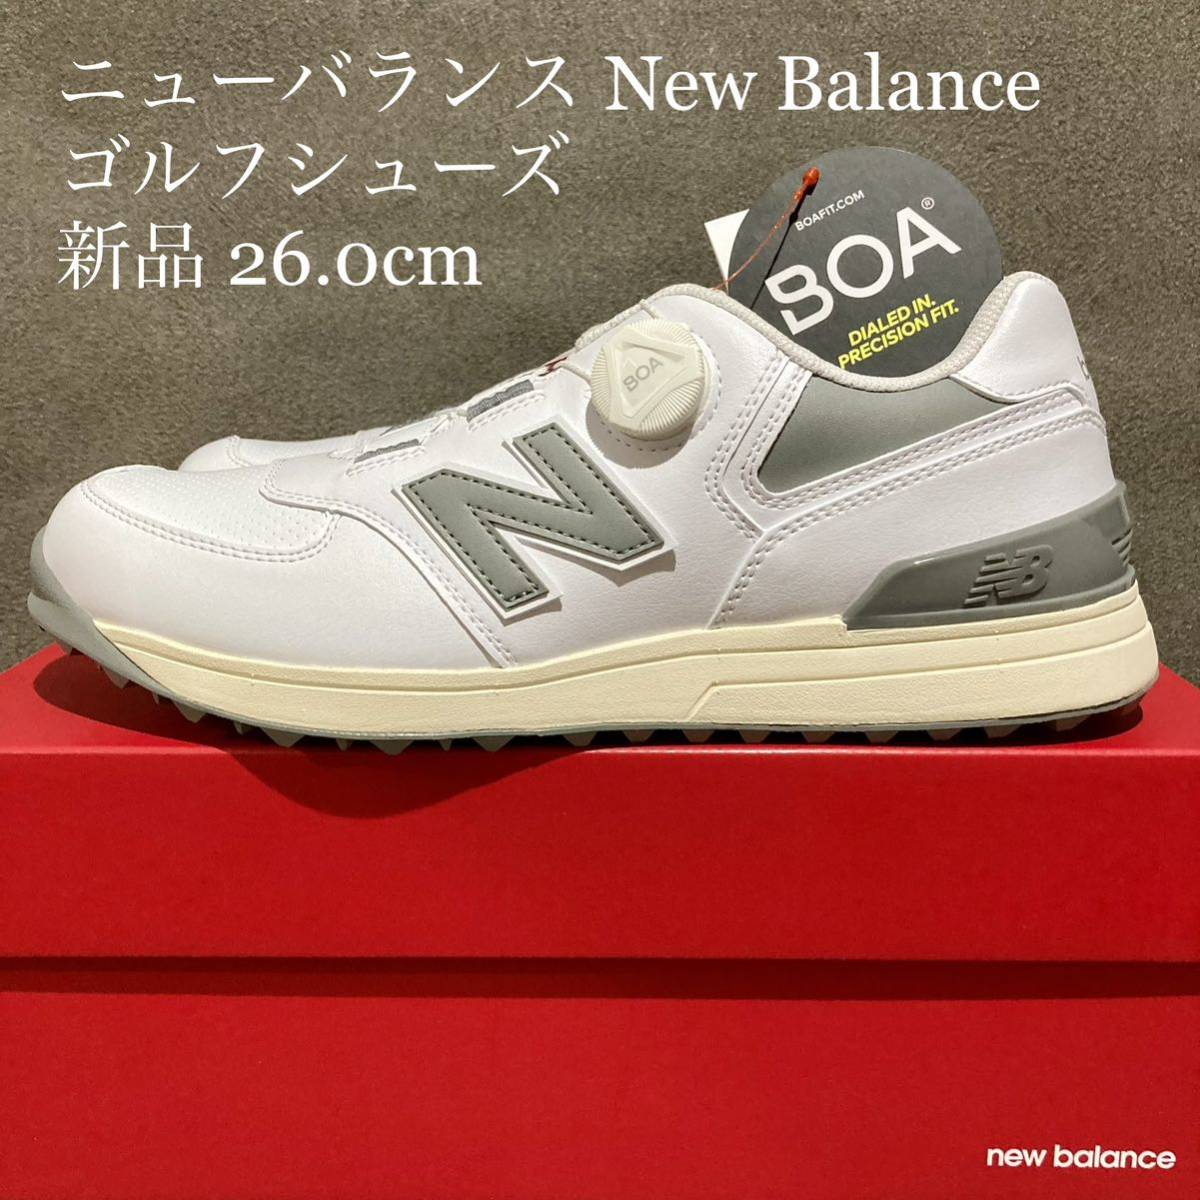 【新品】ニューバランス new balance 26.0cm ゴルフシューズ